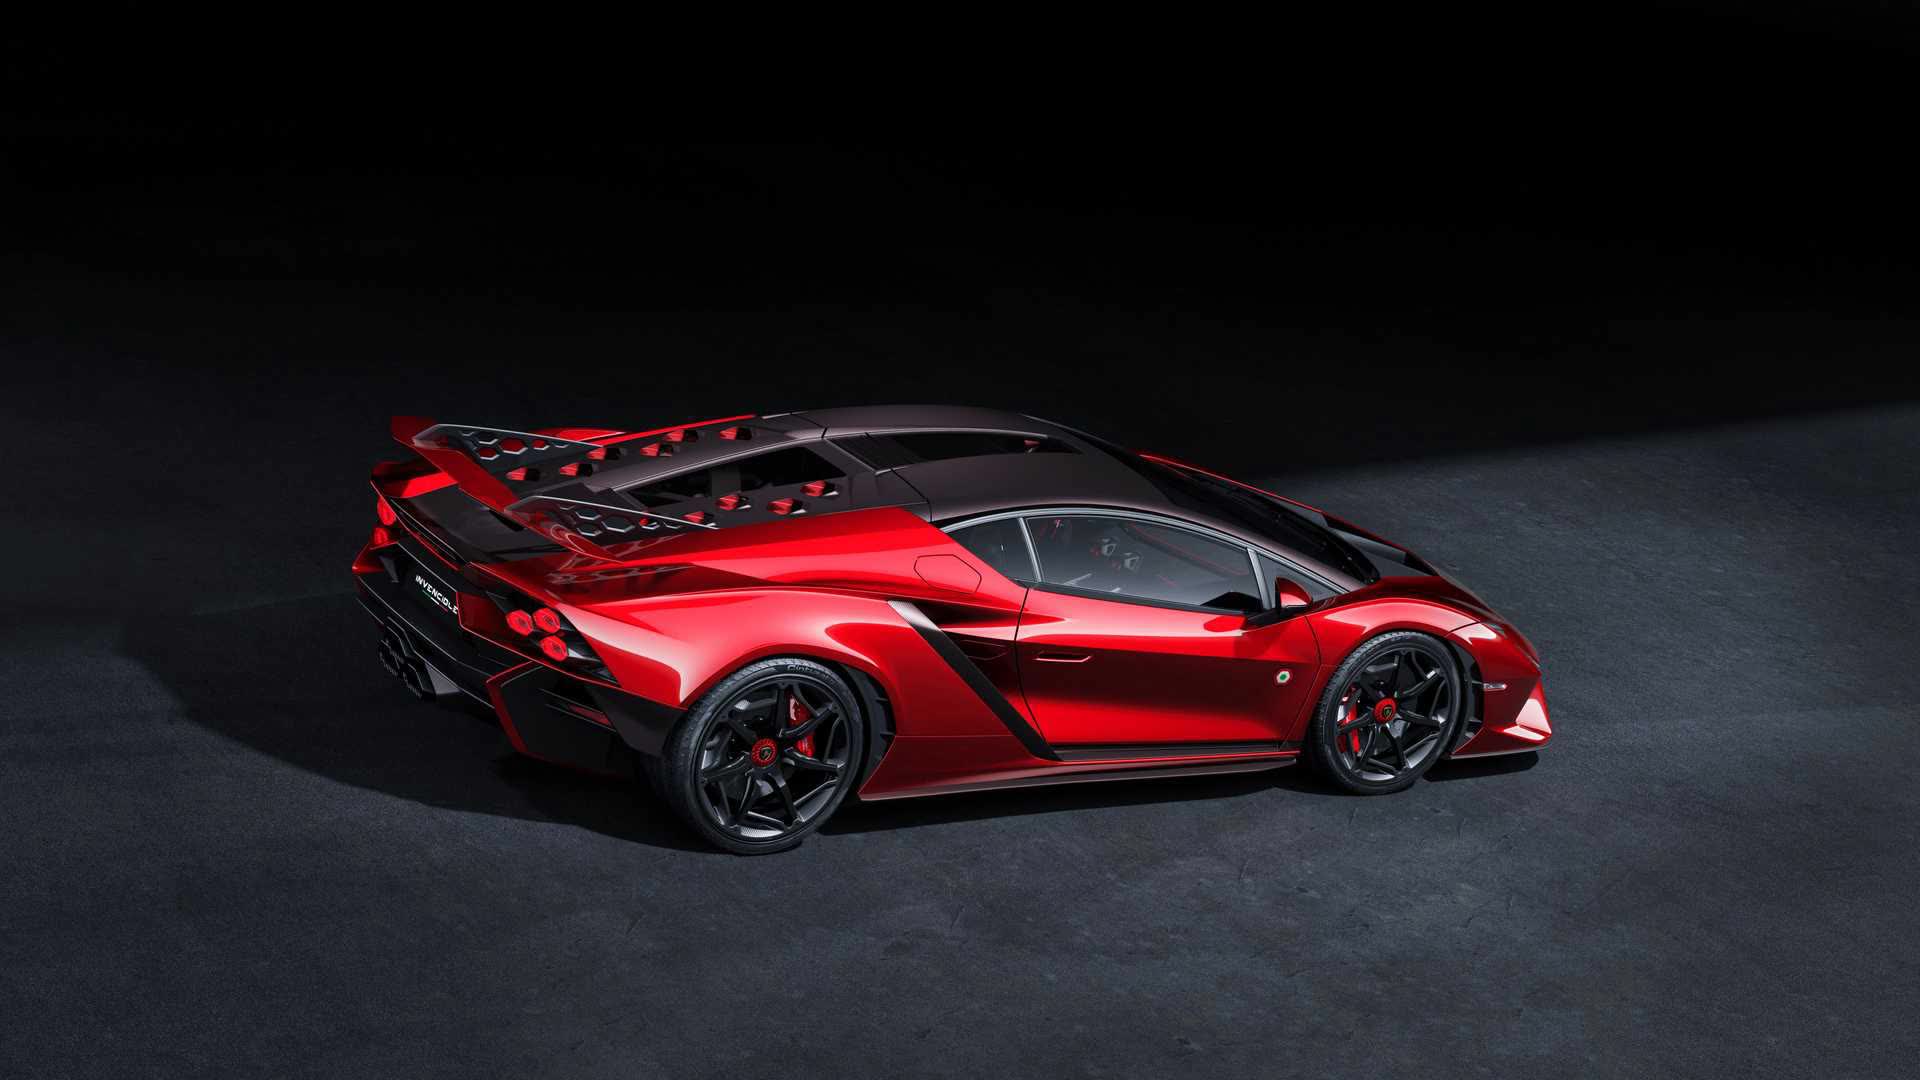 Lamborghini ra mắt bộ đôi siêu xe V12 chạy xăng cuối cùng, sau đây sẽ toàn siêu xe điện êm ru chưa biết nẹt pô kiểu gì - Ảnh 4.